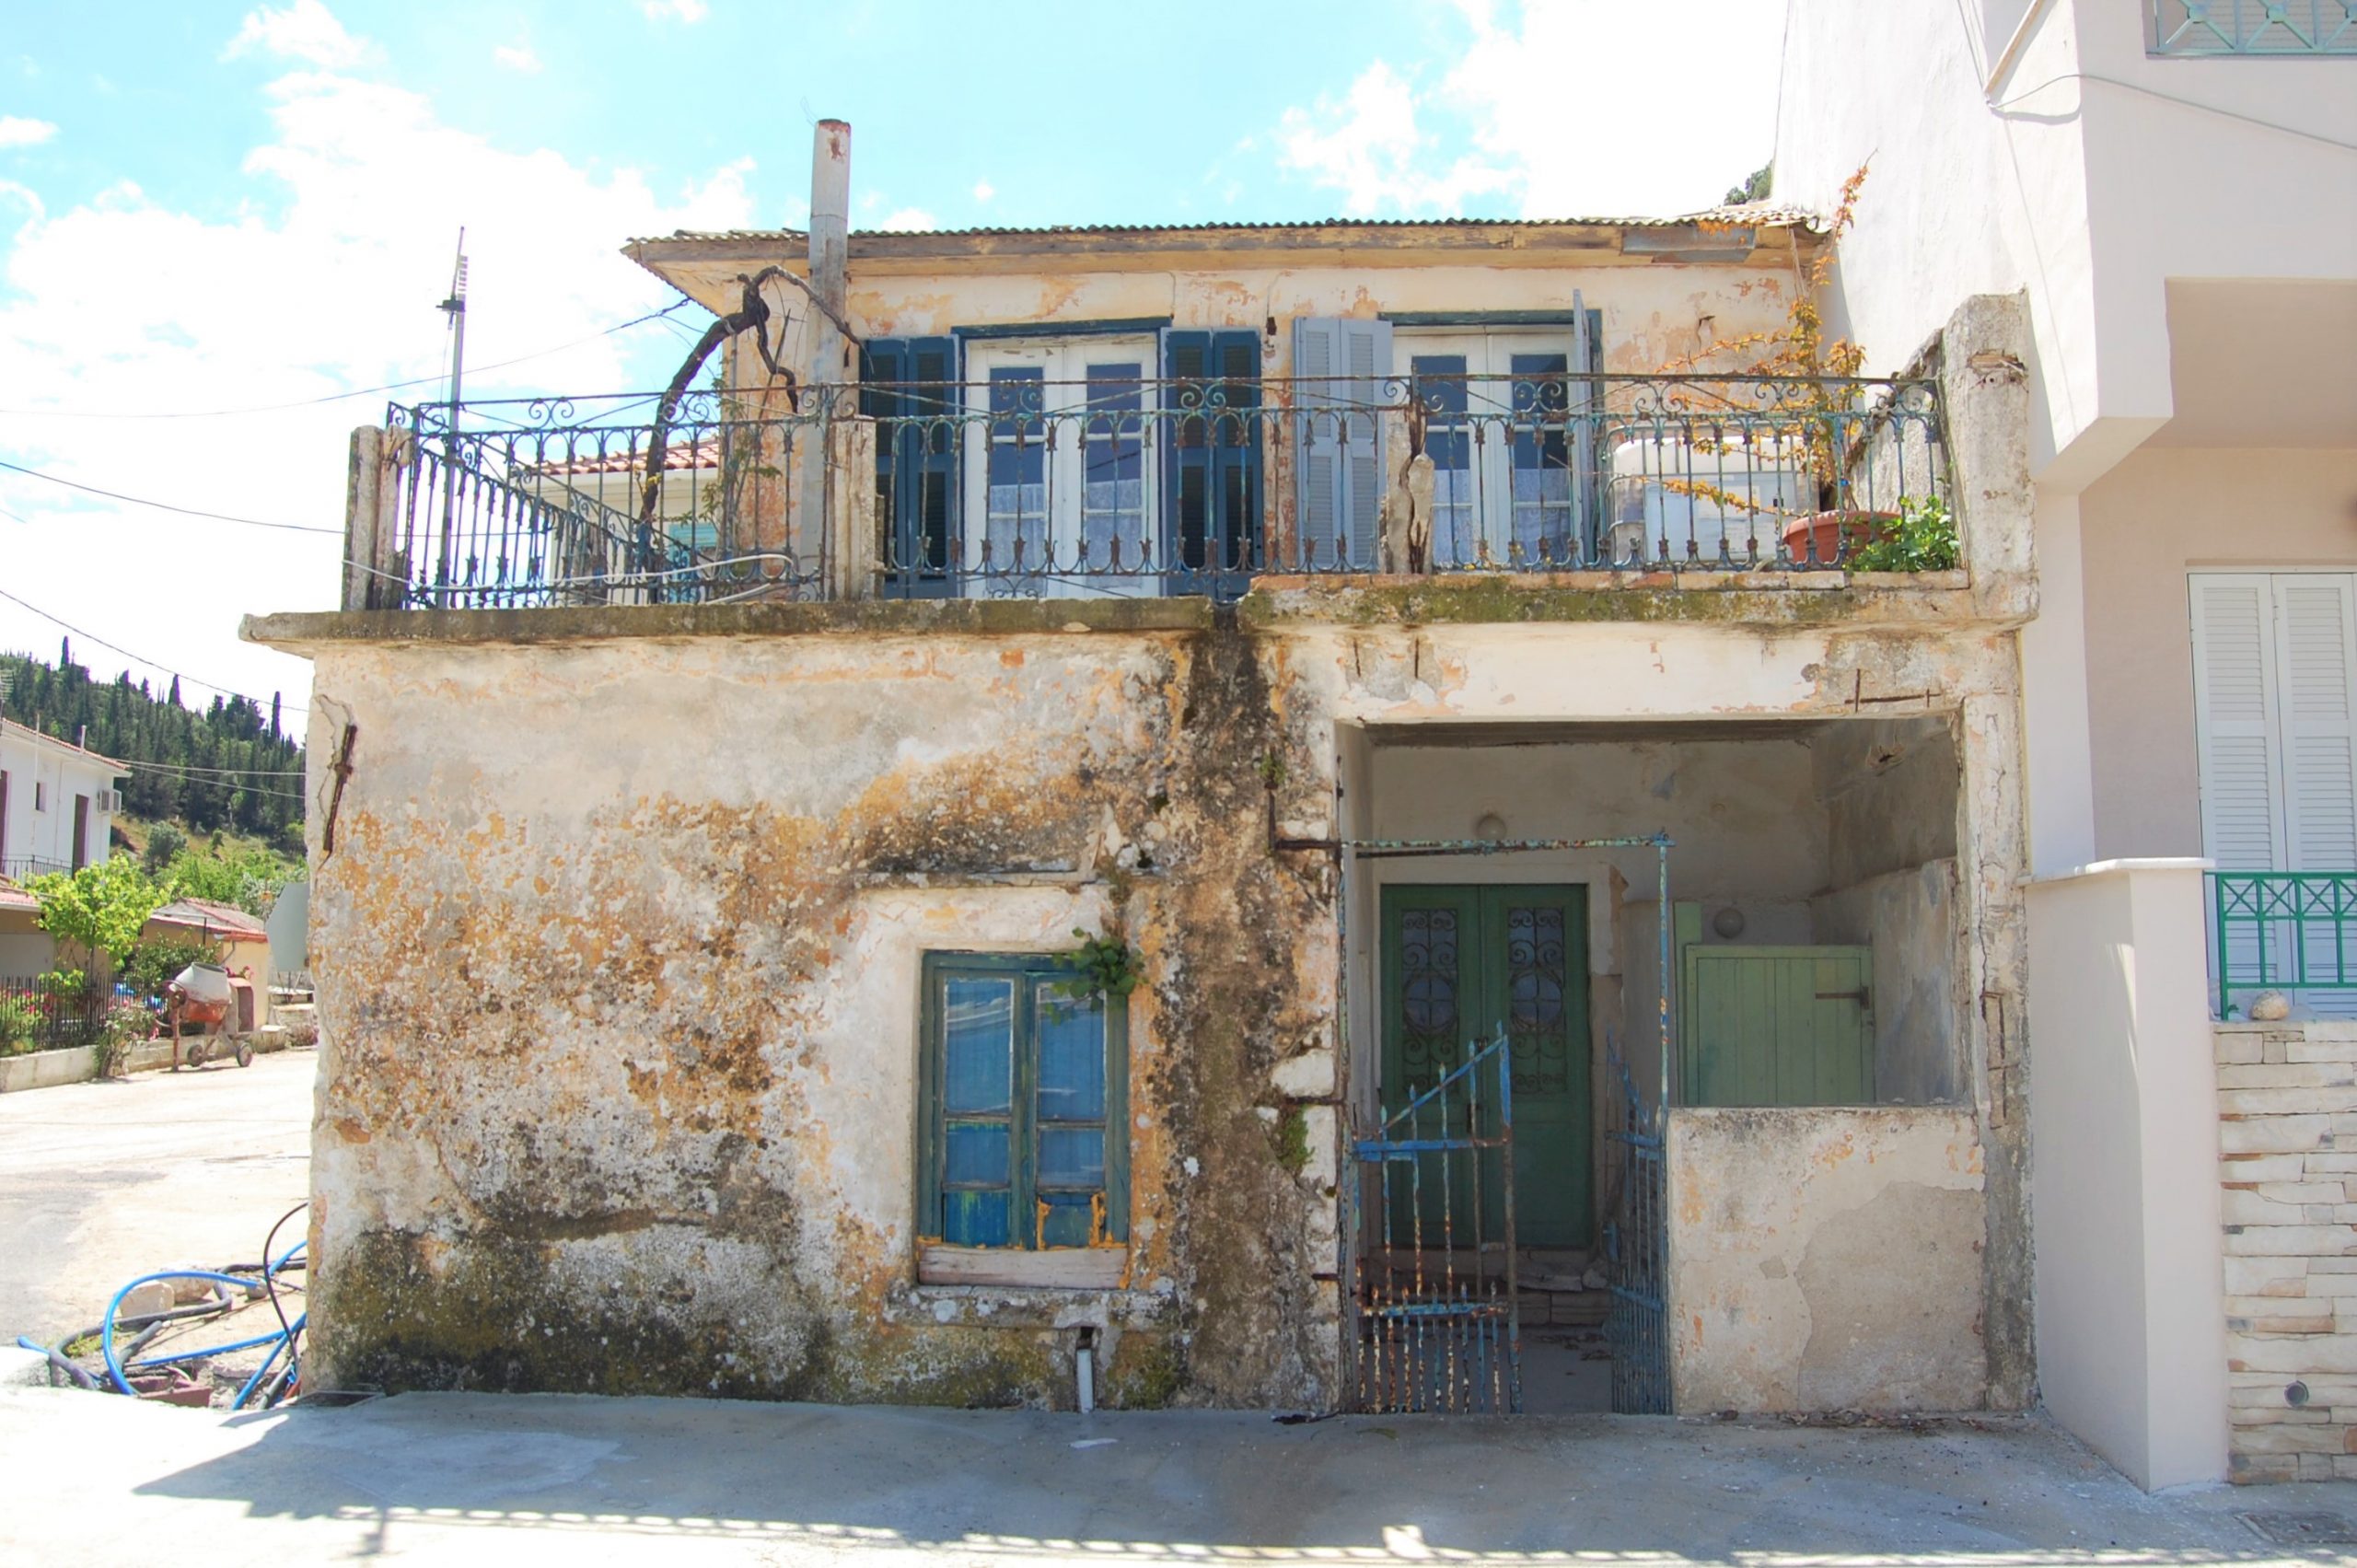 Εξωτερική πρόσοψη κατοικίας προς πώληση Ιθάκια Ελλάδα, Φρίκες